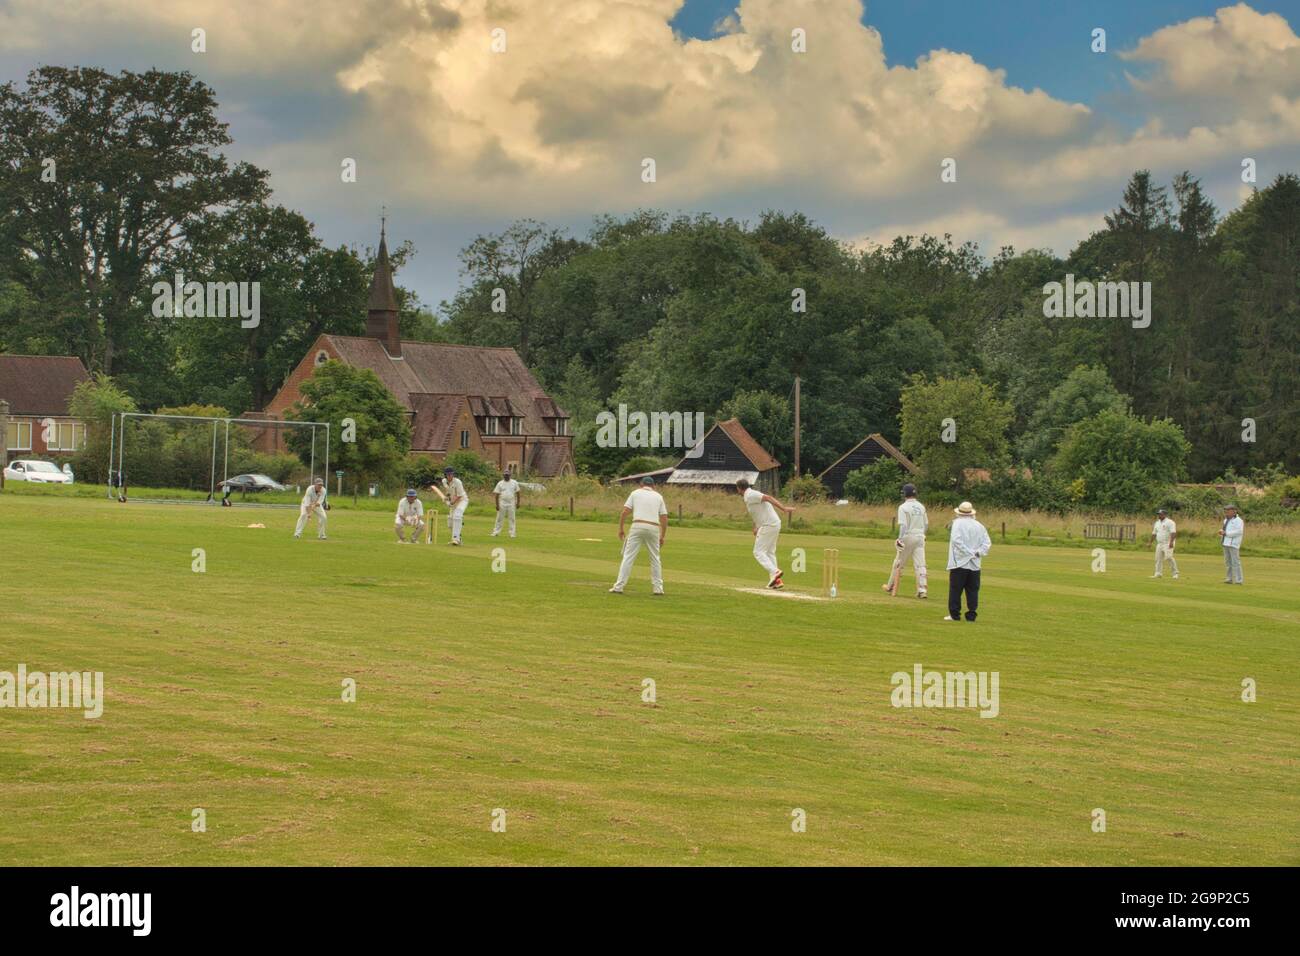 Una tradizionale scena estiva inglese paese - cricket su un villaggio verde - qui a Ockley, Surrey, Regno Unito Foto Stock